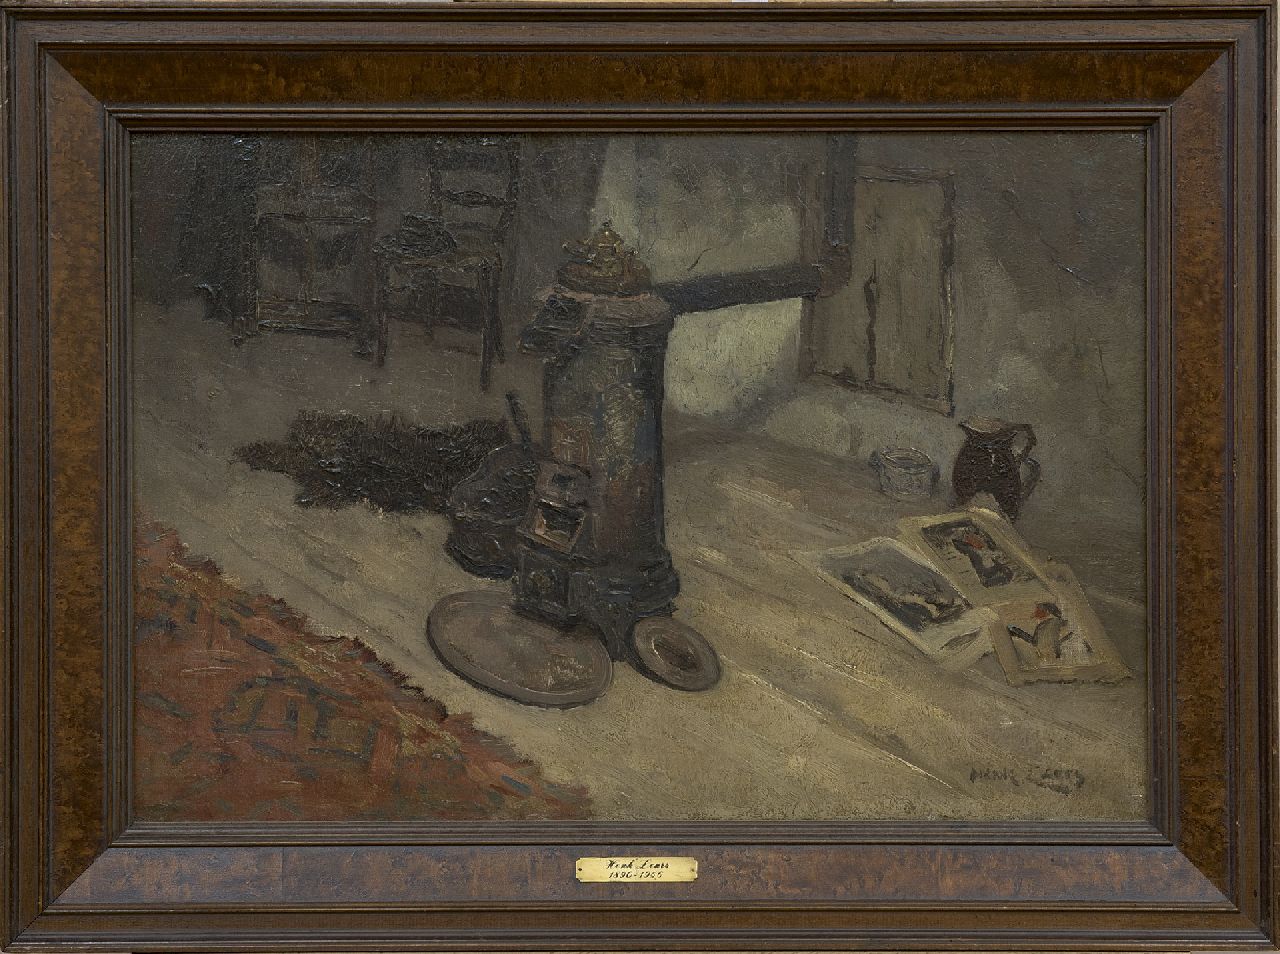 Leurs H.J.  | Hendrik Johannes 'Henk' Leurs | Schilderijen te koop aangeboden | Interieur met potkachel, olieverf op doek 40,6 x 60,5 cm, gesigneerd rechtsonder